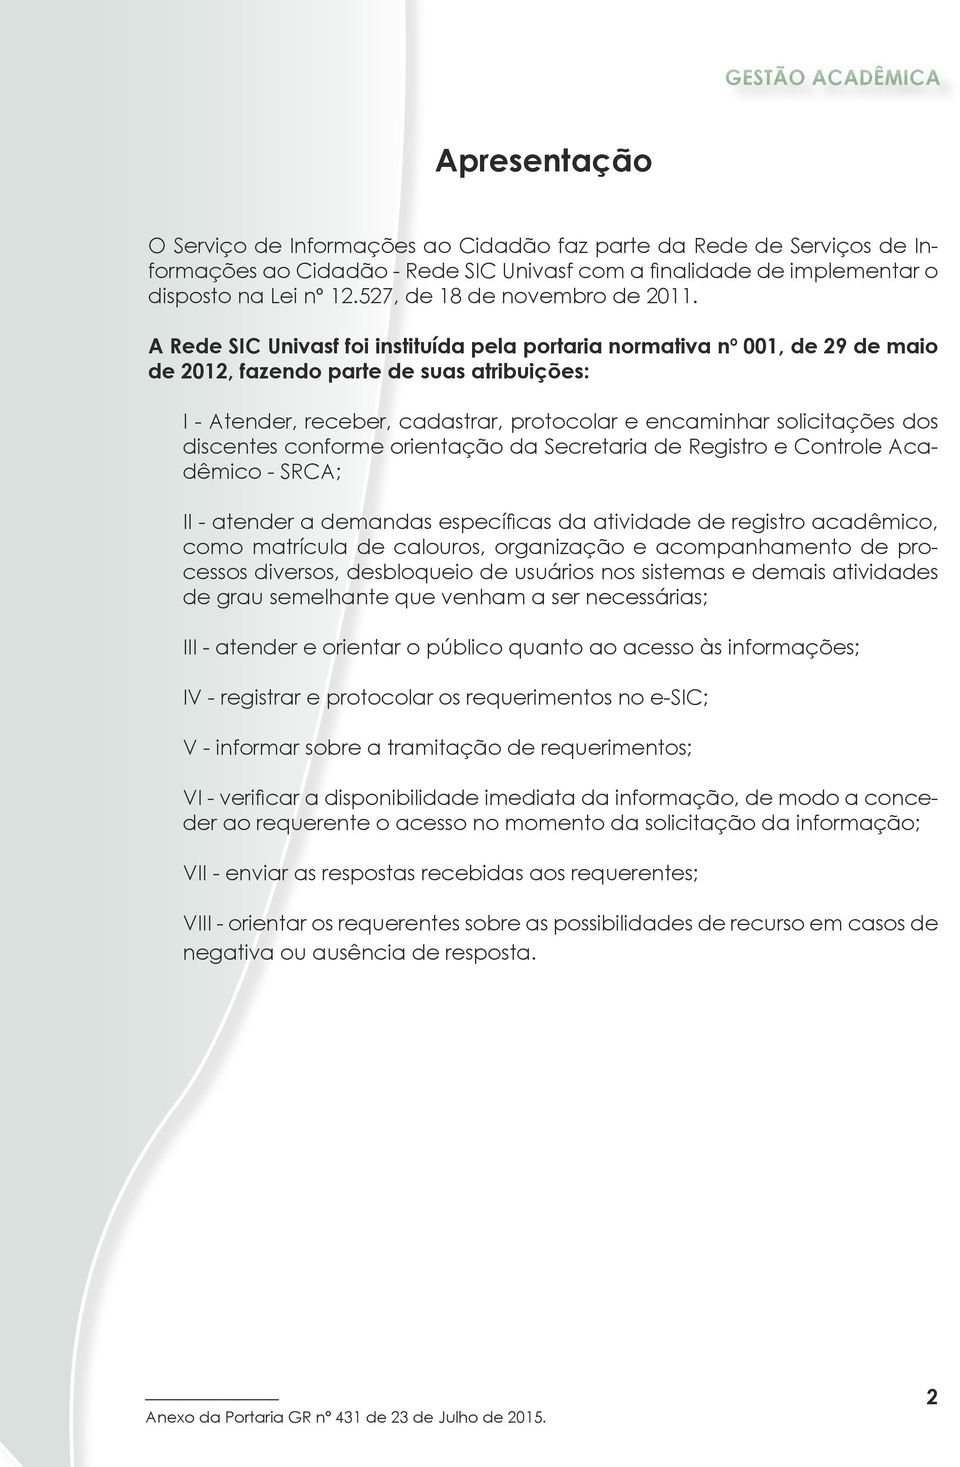 A Rede SIC Univasf foi instituída pela portaria normativa nº 001, de 29 de maio de 2012, fazendo parte de suas atribuições: I - Atender, receber, cadastrar, protocolar e encaminhar solicitações dos